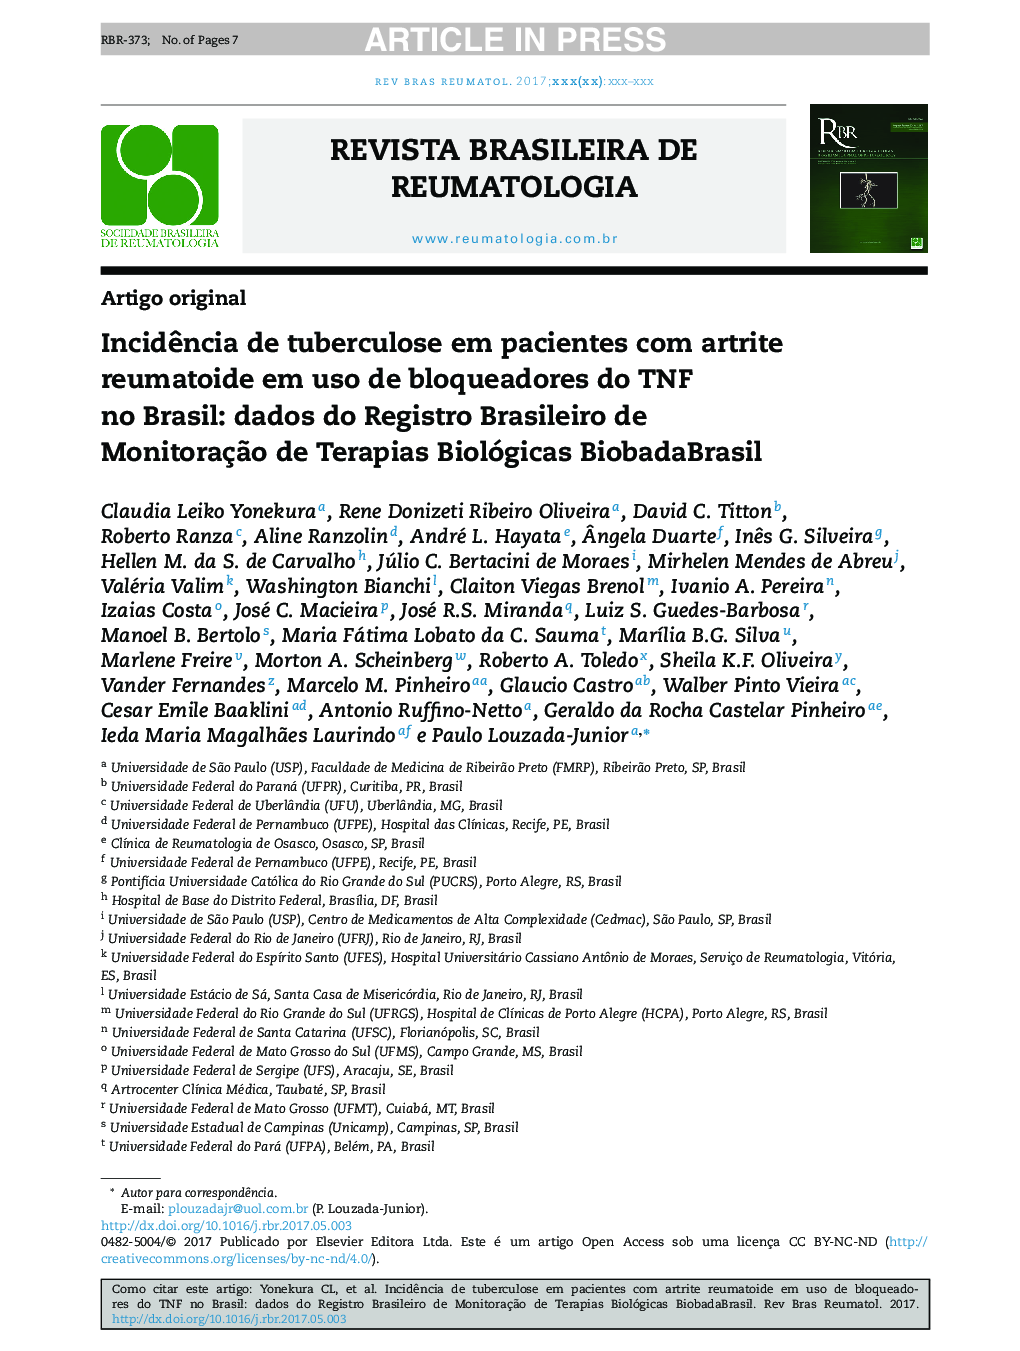 IncidÃªncia de tuberculose em pacientes com artrite reumatoide em uso de bloqueadores do TNF no Brasil: dados do Registro Brasileiro de MonitoraçÃ£o de Terapias Biológicas BiobadaBrasil